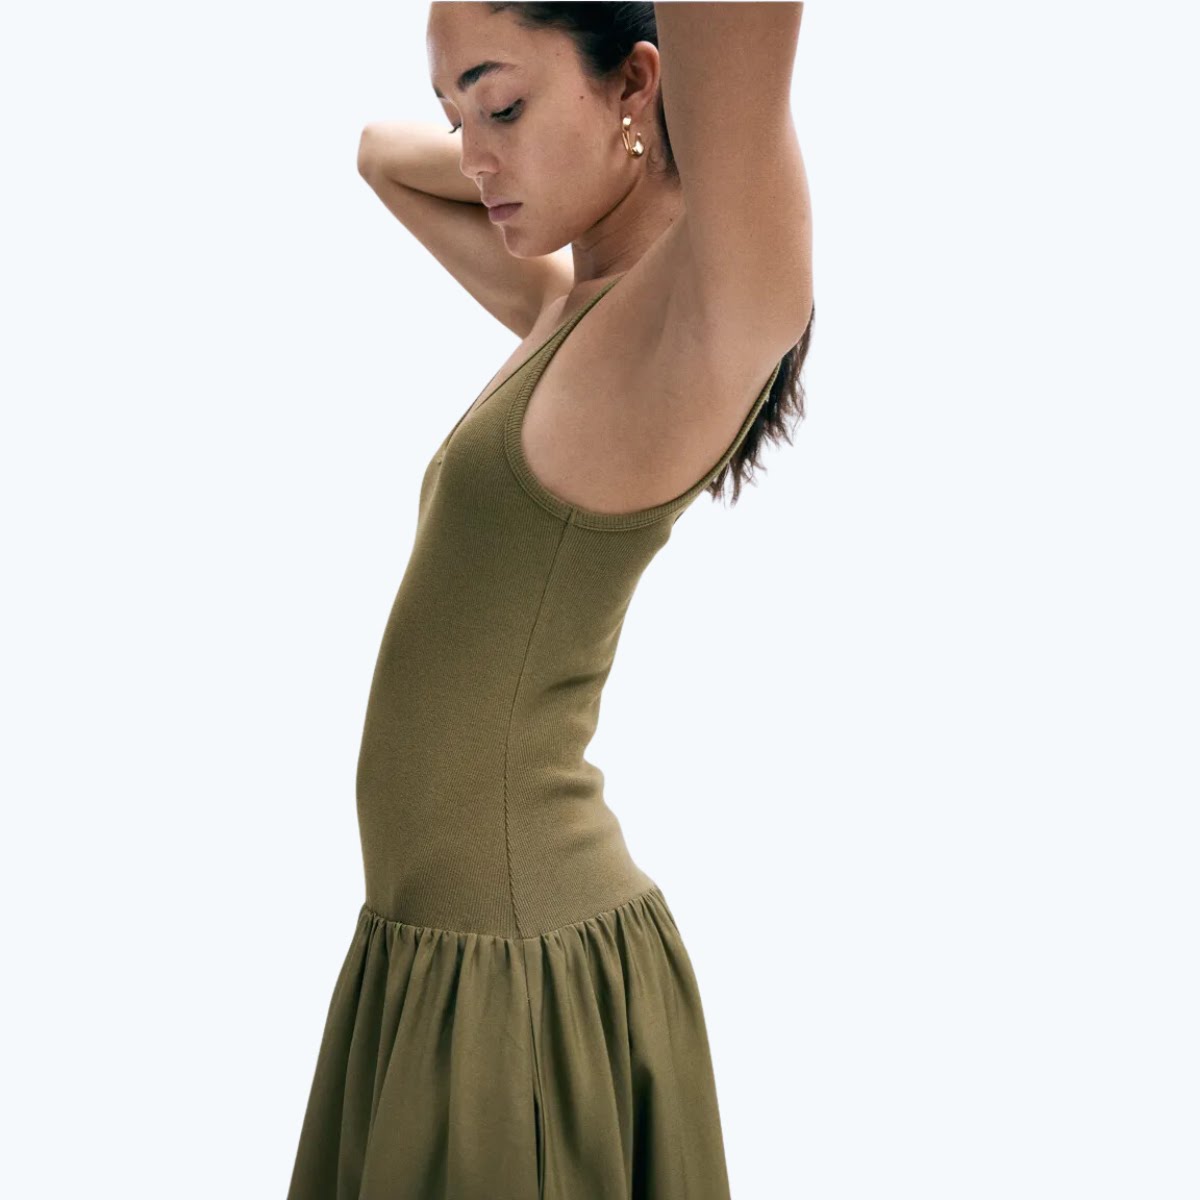 Flared-Skirt Dress in Khaki Green, €54.99, H&M